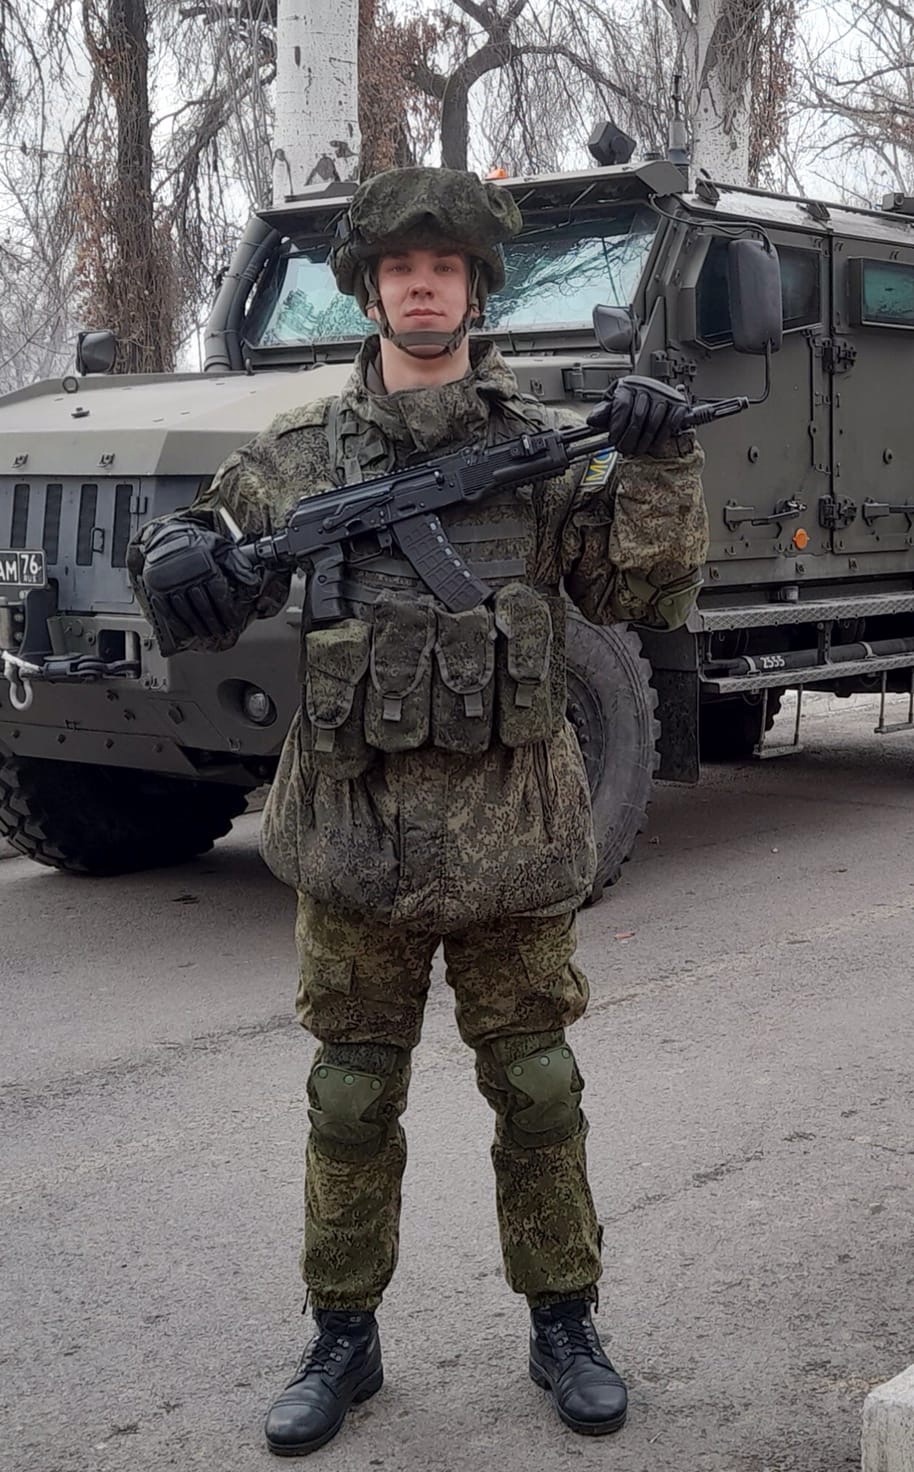 Фото сделано во время патрулирования одной из улиц Алма-Аты. В конце миротворческой миссии в Казахстане Алексея наградили почетной грамотой оборонного ведомства